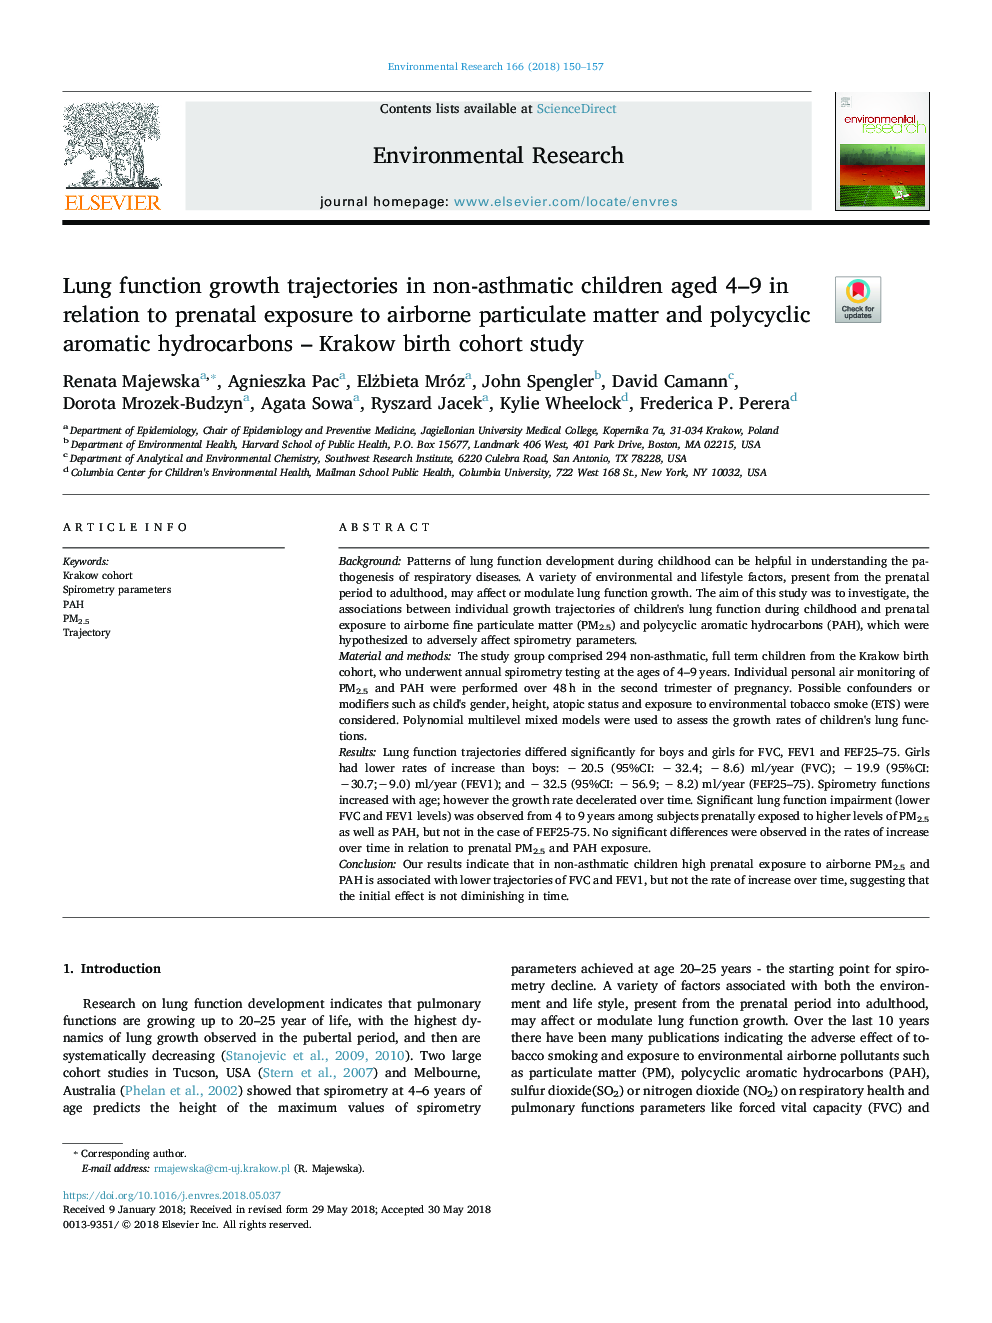 مسیر رشد ریه در کودکان 4 تا 9 ساله غیر مرتبط با آسم در ارتباط با قرار گرفتن در معرض ذرات هوا در هوا و هیدروکربن های آروماتیک چند حلقه ای - مطالعه کوهورت در کراکوف 